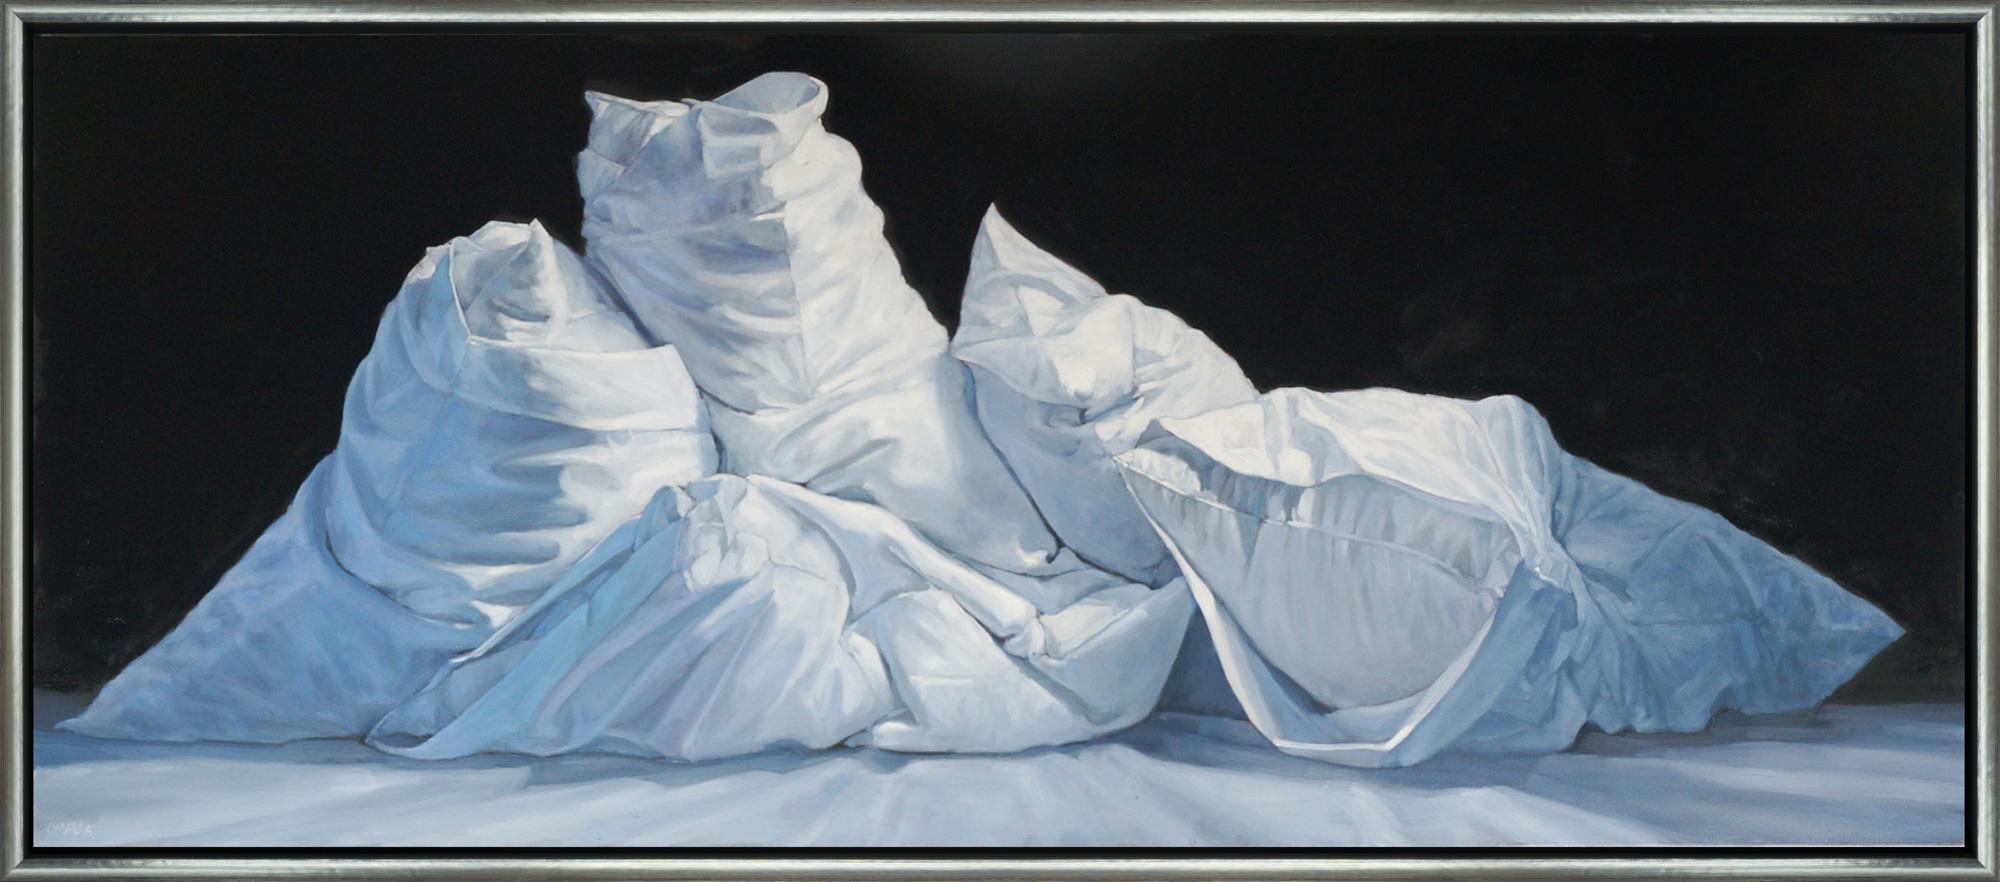 Still-Life Painting Carol O'Malia - "Throw Out Your Cares" Nature morte contemporaine Huile sur toile Peinture encadrée